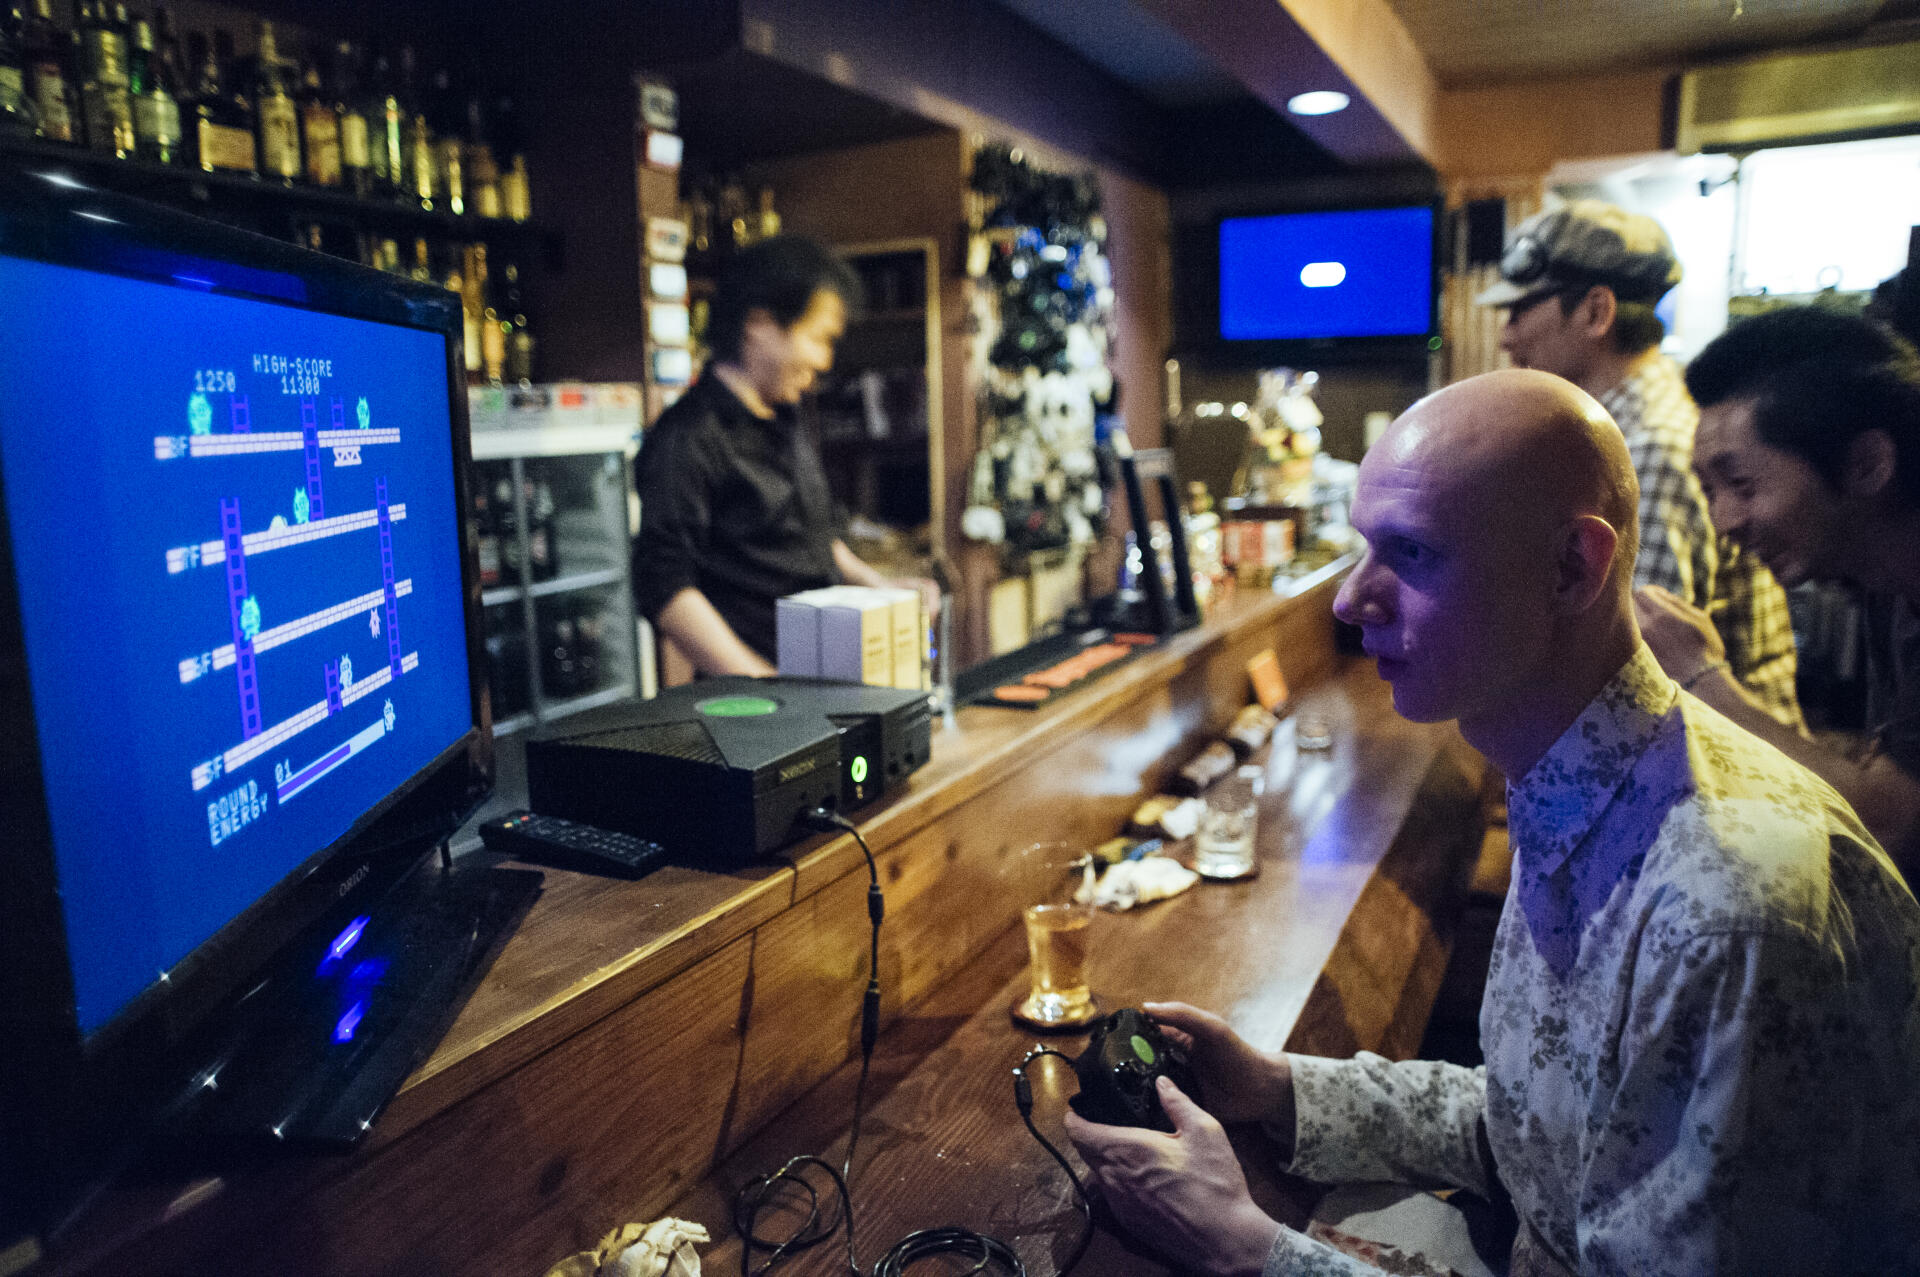 Le Genesis bar, en banlieue de Nagoya, réunit des passionnés de vieux jeux vidéo.